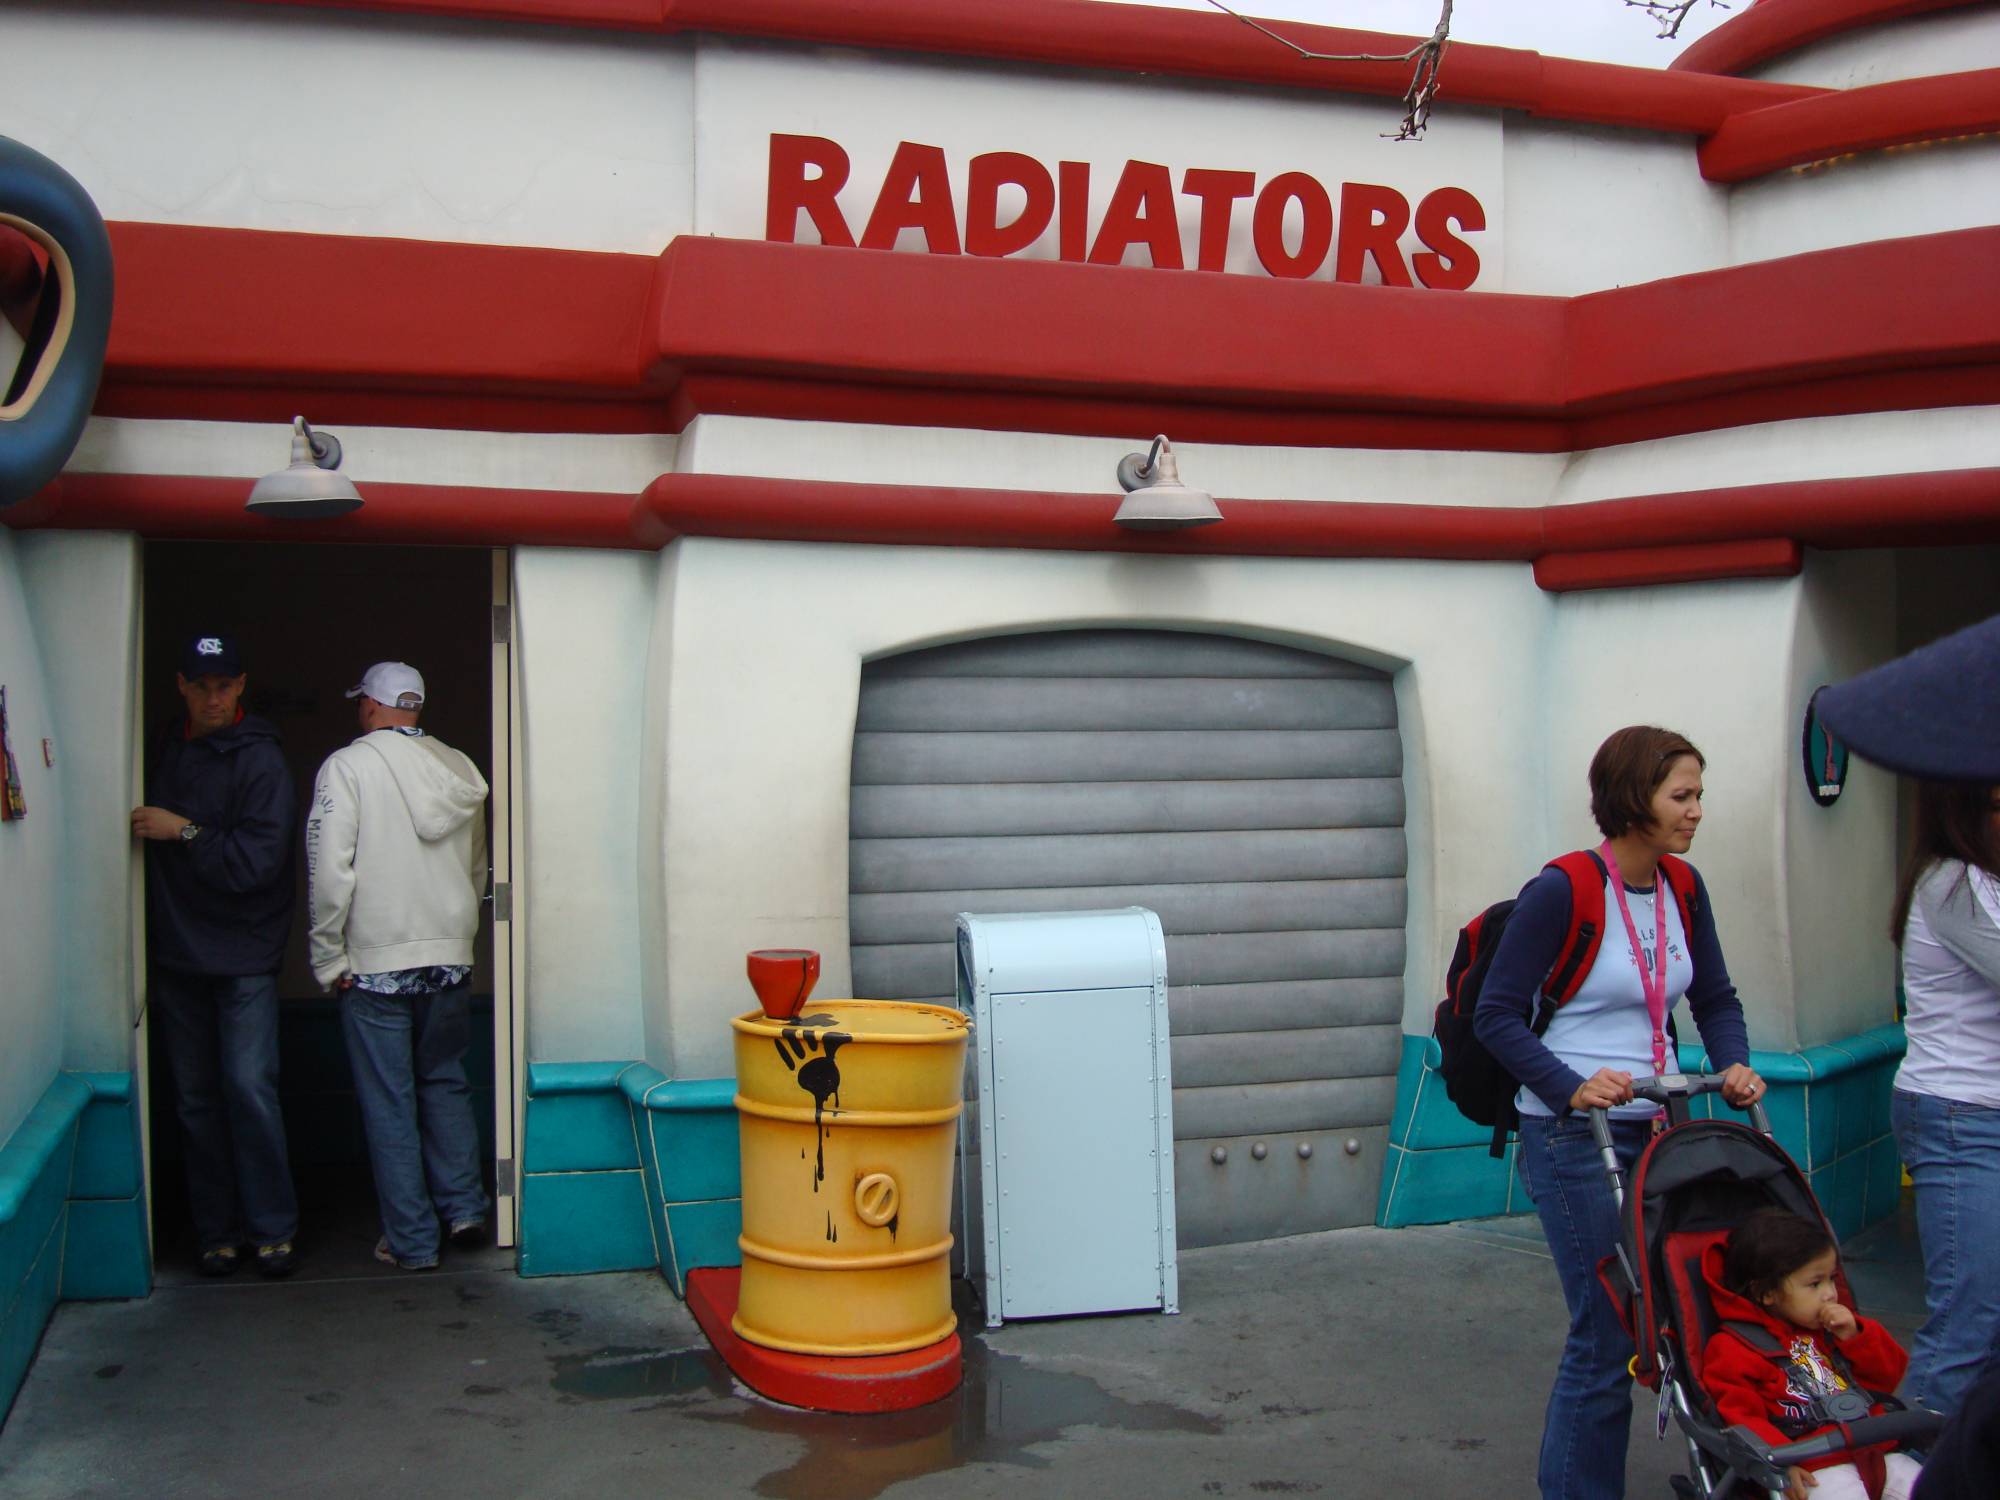 Toontown - Radiators (Restrooms)